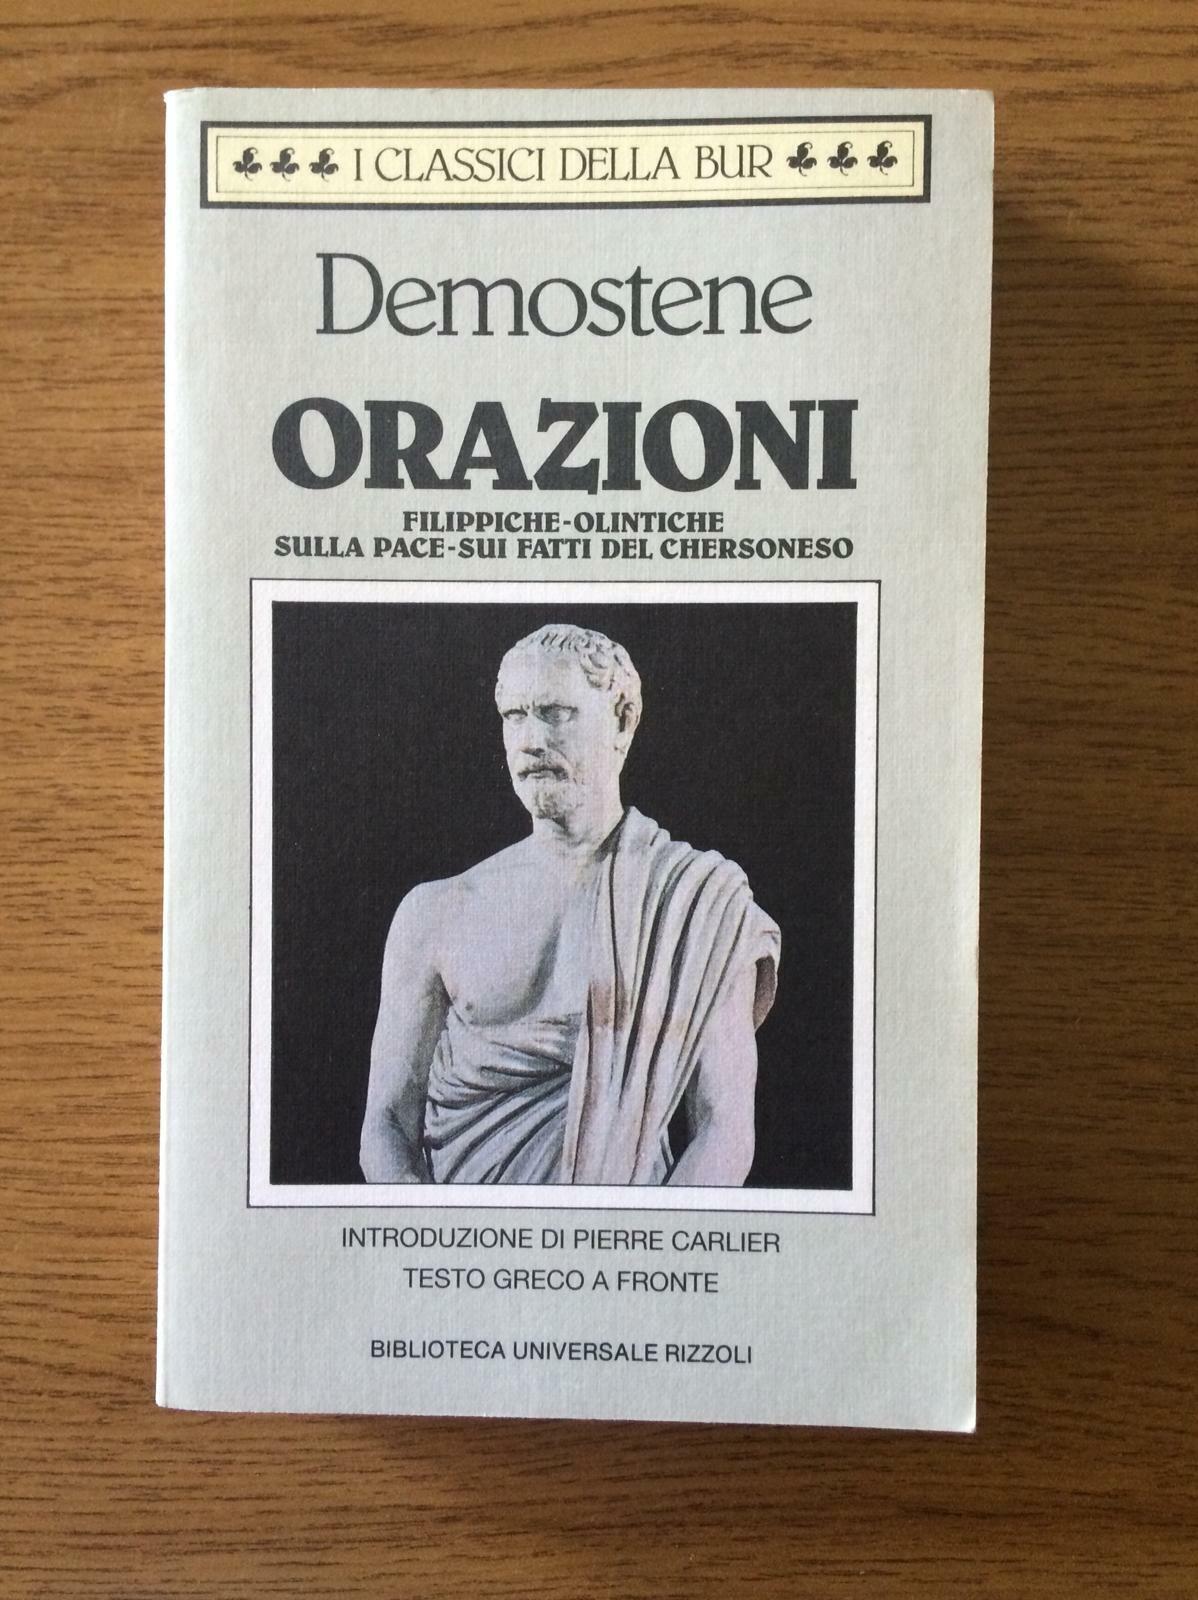 Orazioni - Demostene - Biblioteca Universale Rizzoli - 1992 - AR libro usato